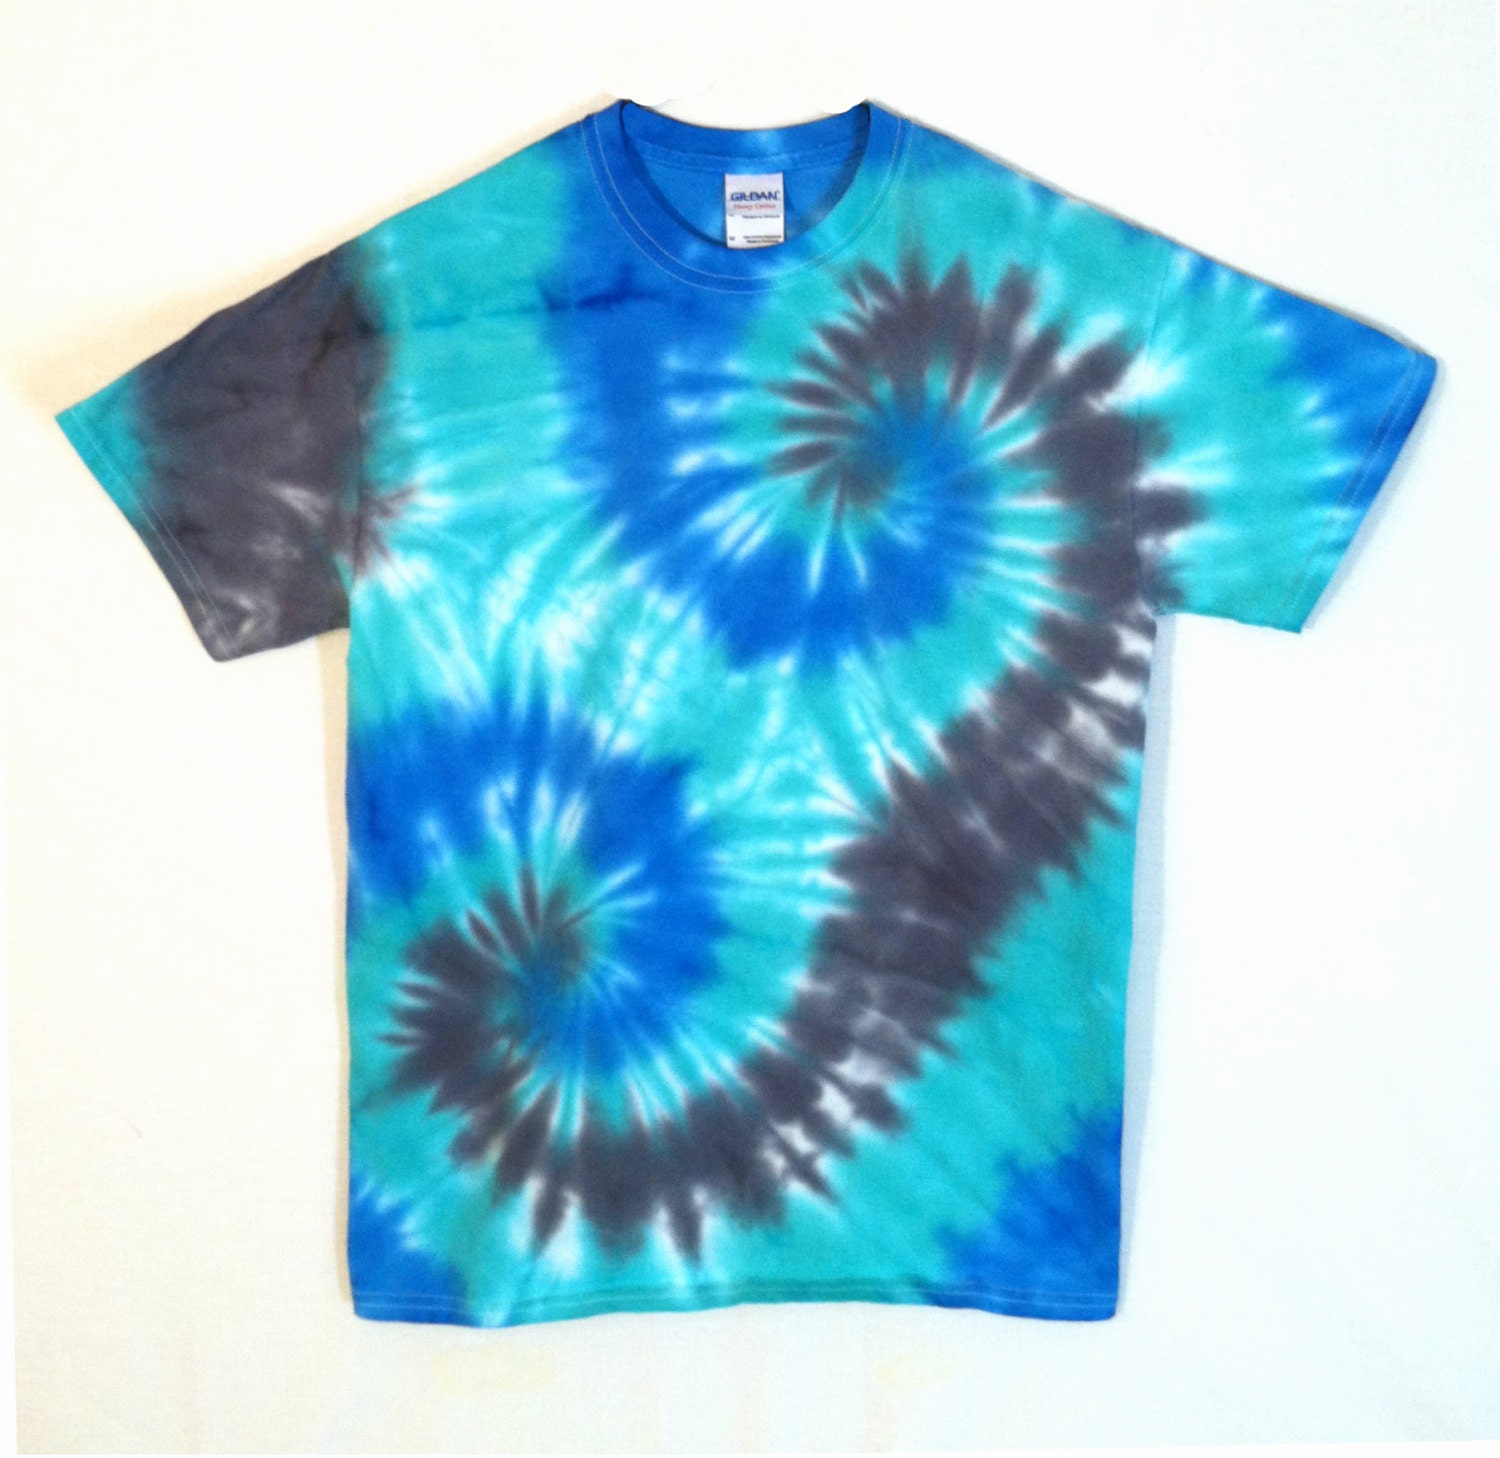 Tie Dye T-Shirt Blue and Black Spirals by RainbowEffectsTieDye